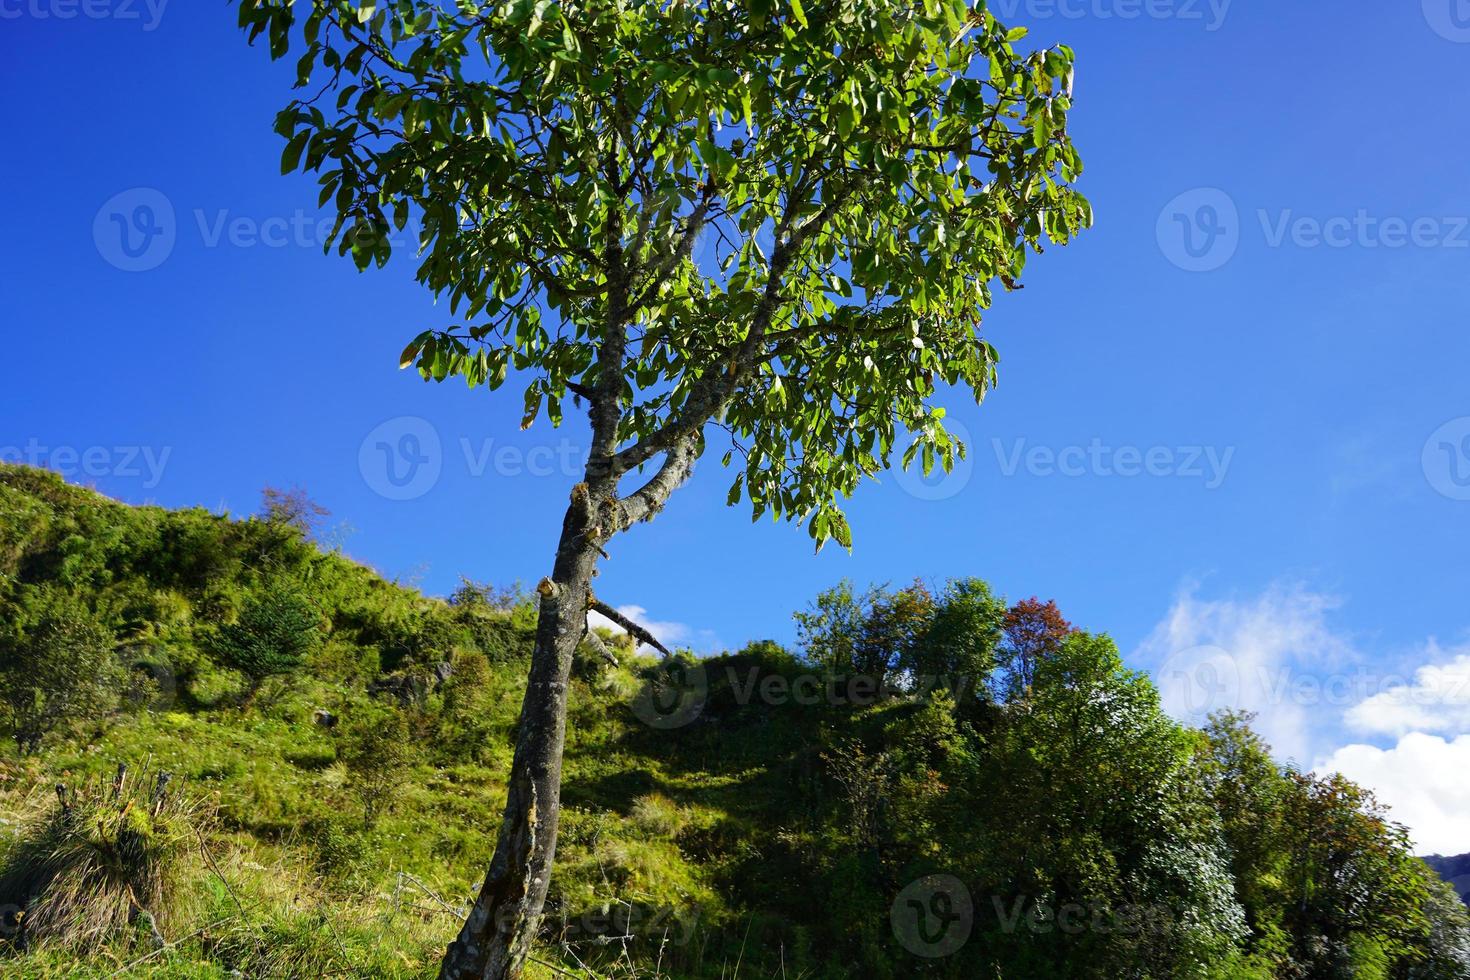 single groen boom in berg van zijde route, sikkim foto